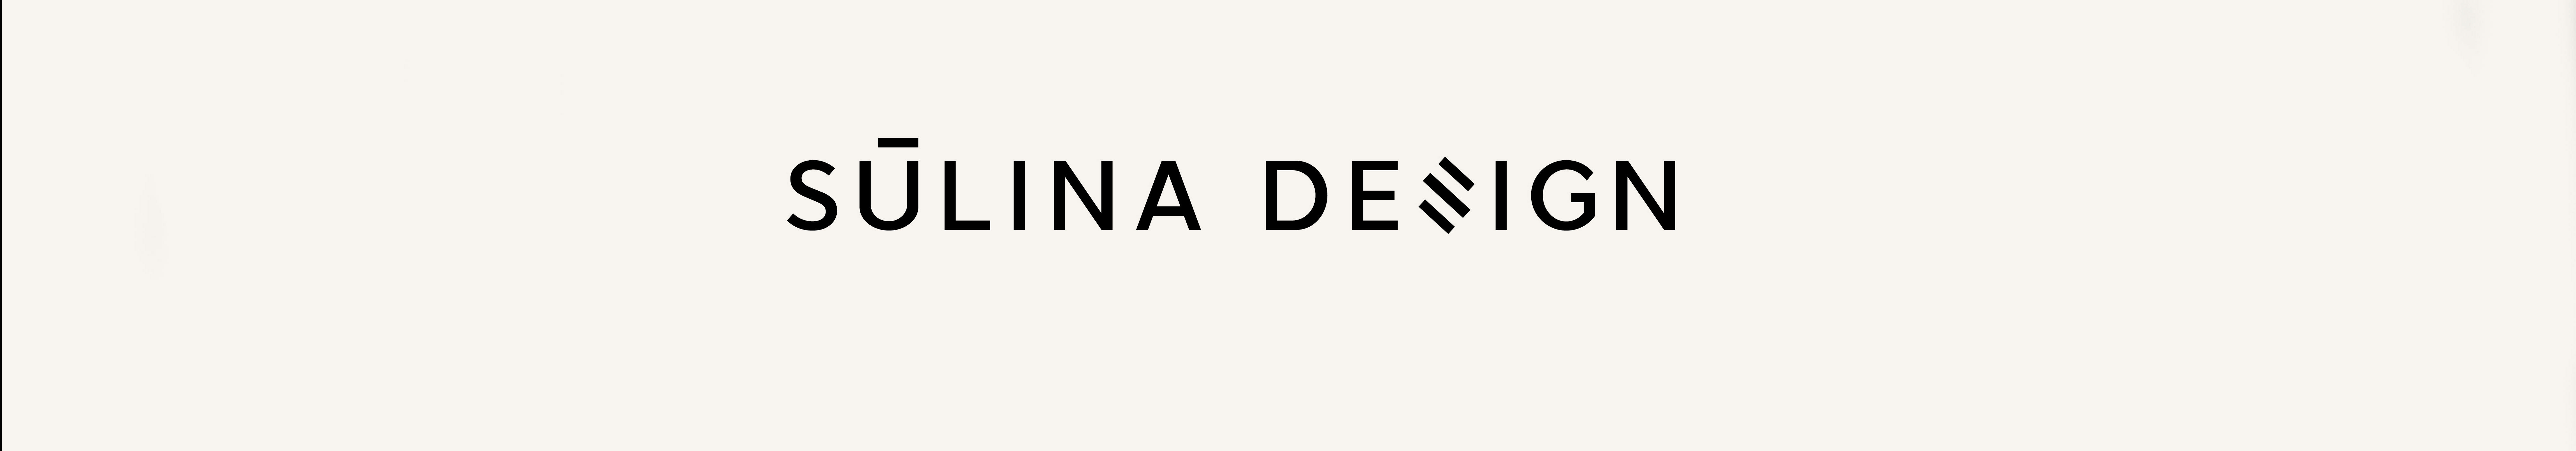 Alina Sulina Design's profile banner